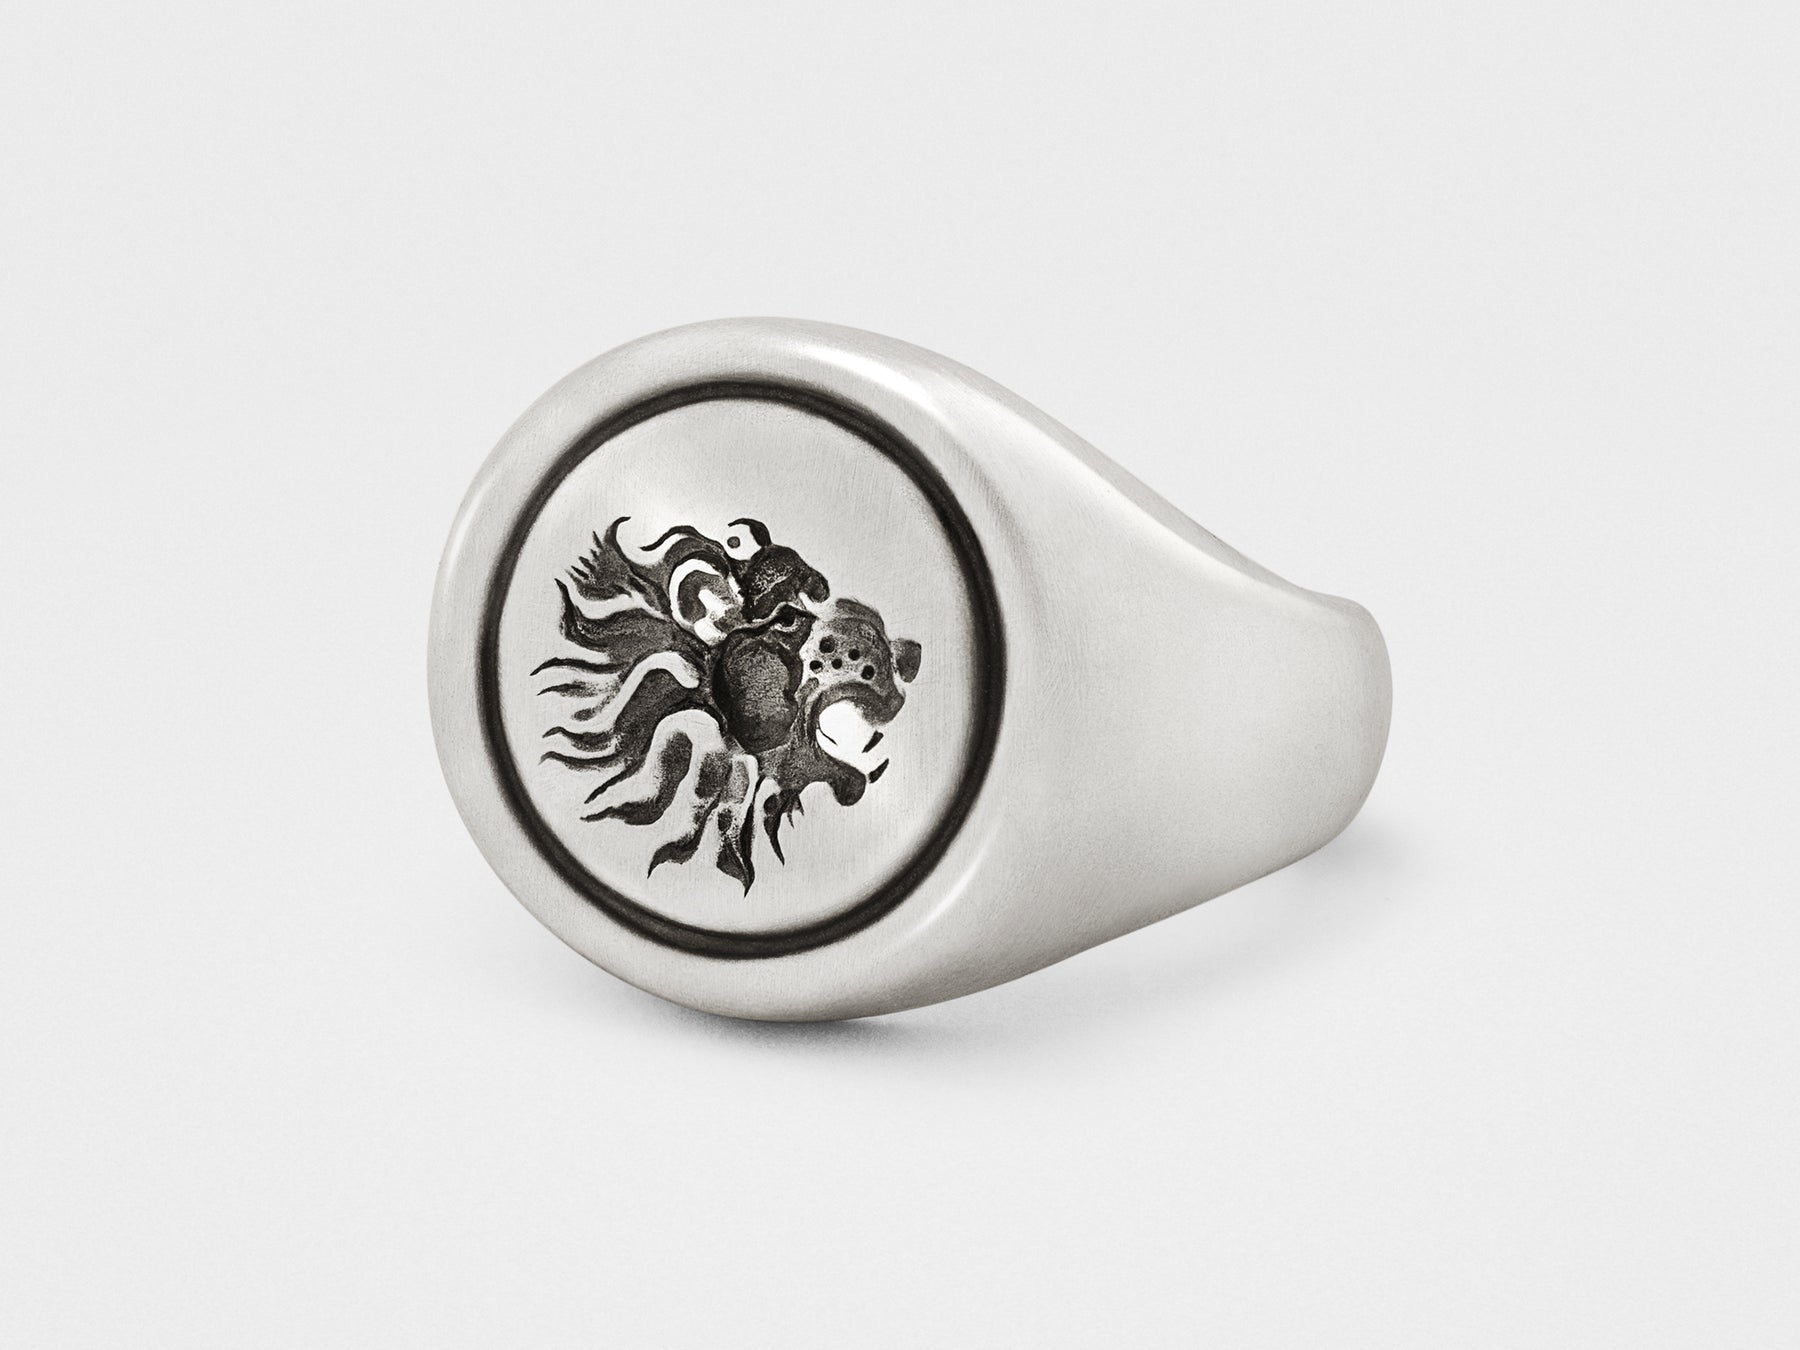 Ceramic signet ring with lion design on Craiyon